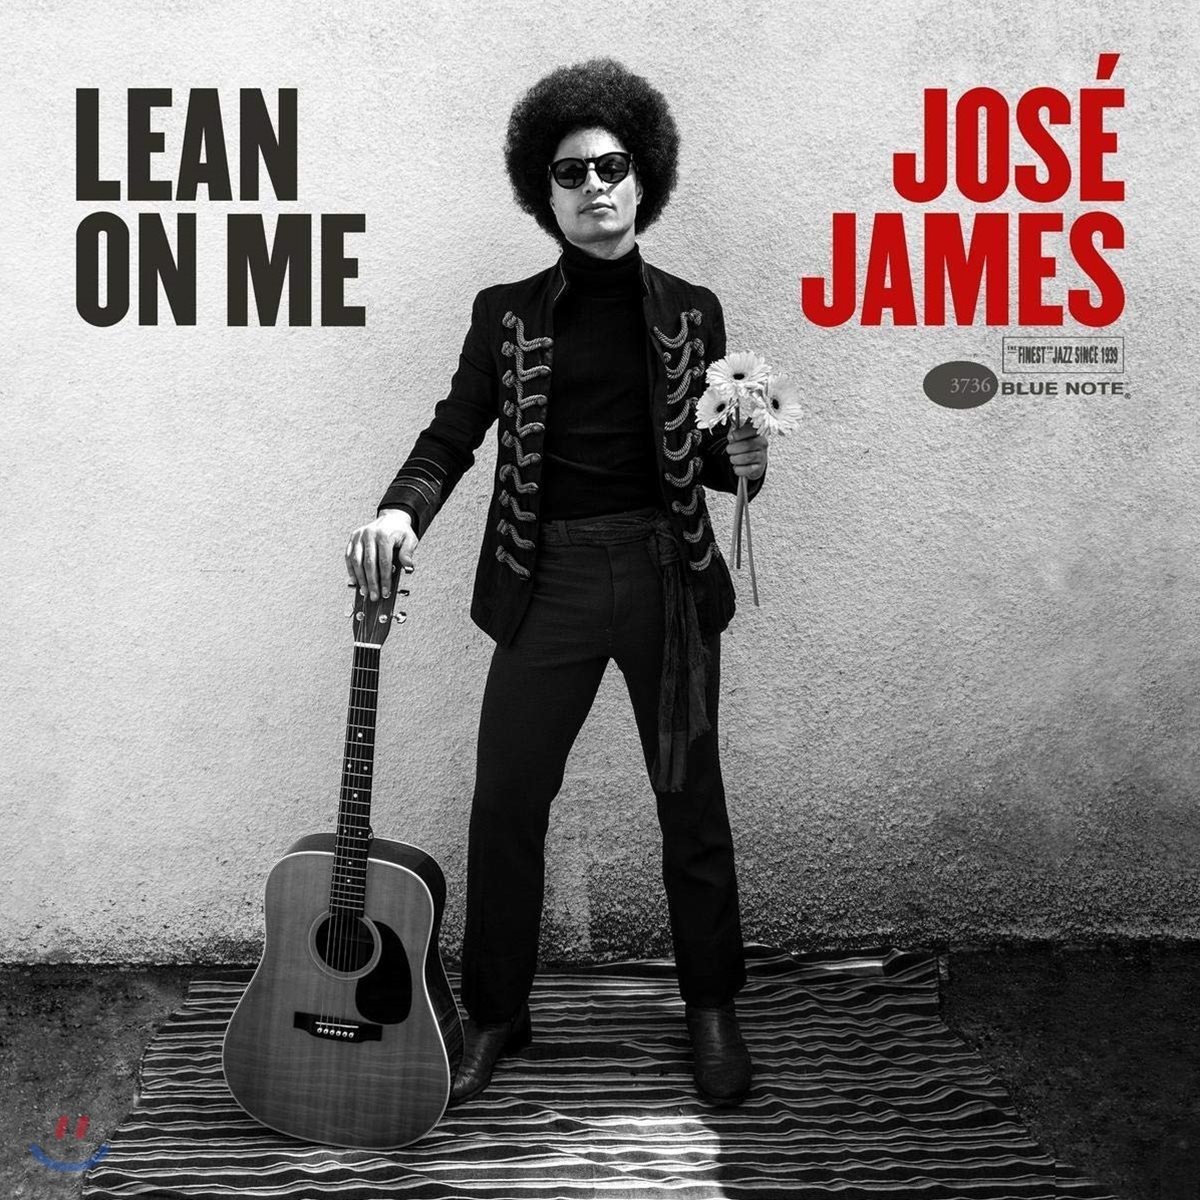 Jose James (호세 제임스) - Lean on Me